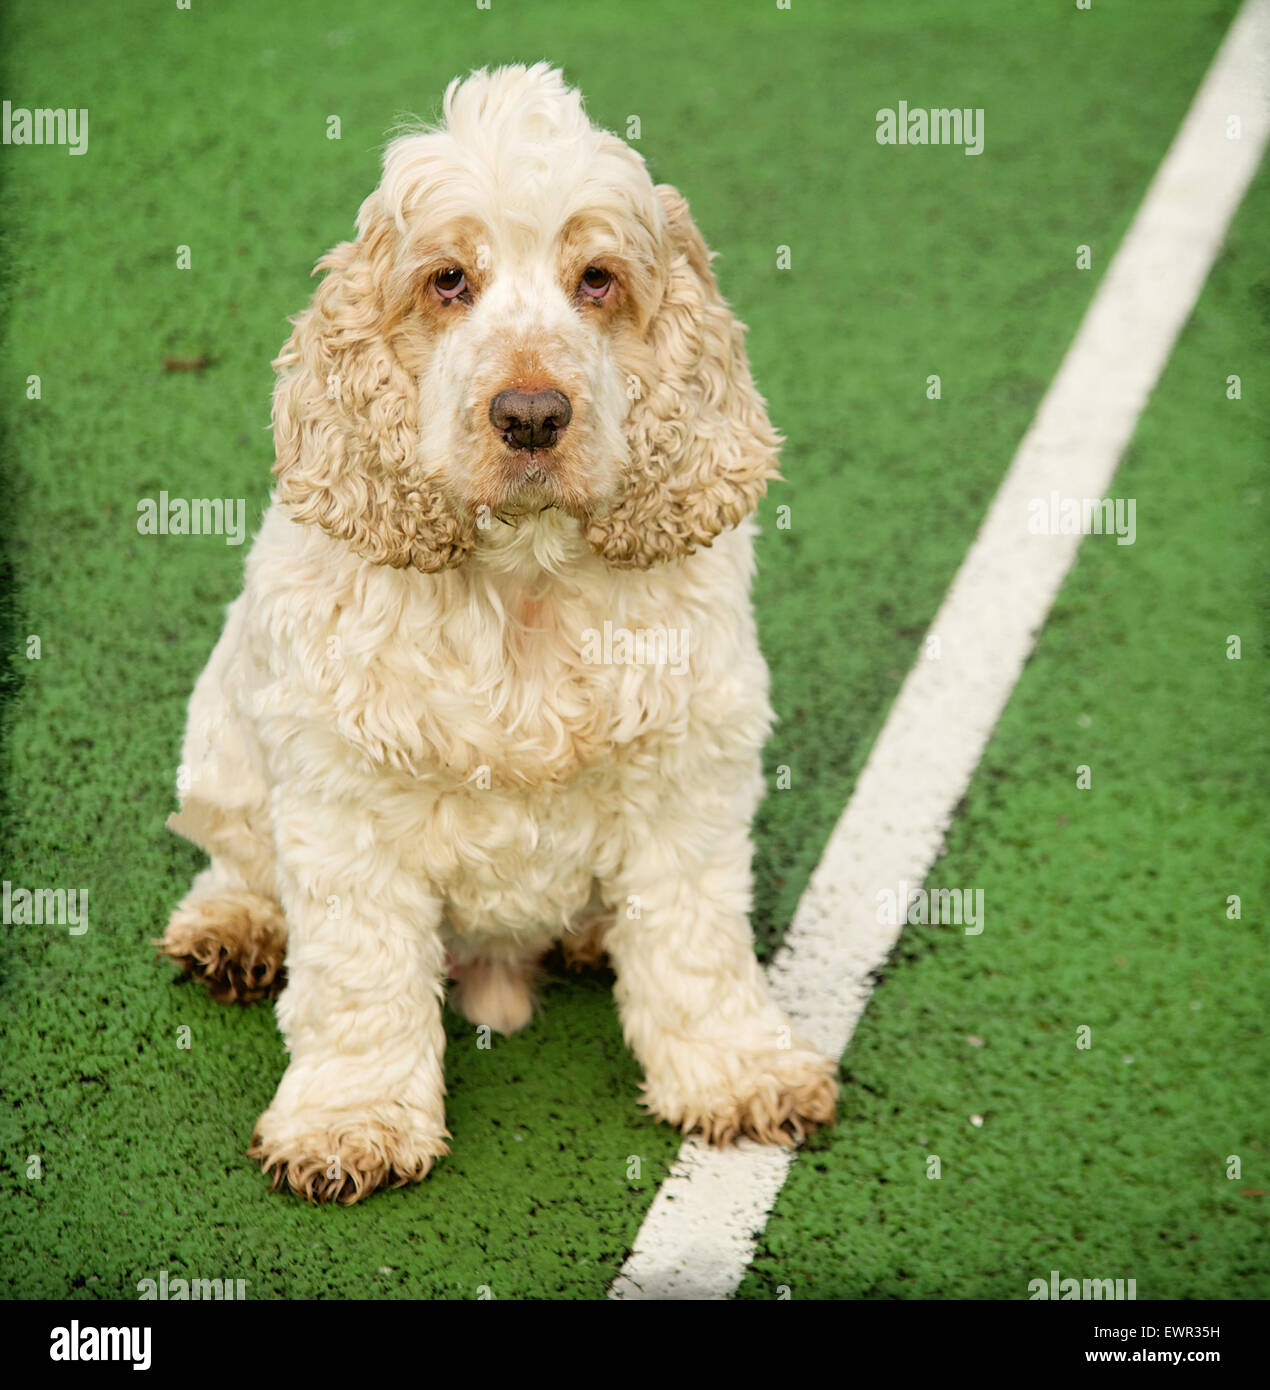 Hund auf Tennis Service Mittellinie durch Netz auf der Suche direkt auf der Kamera.  Cocker Spaniel orange Roan mit Pfote auf Mittellinie. Stockfoto